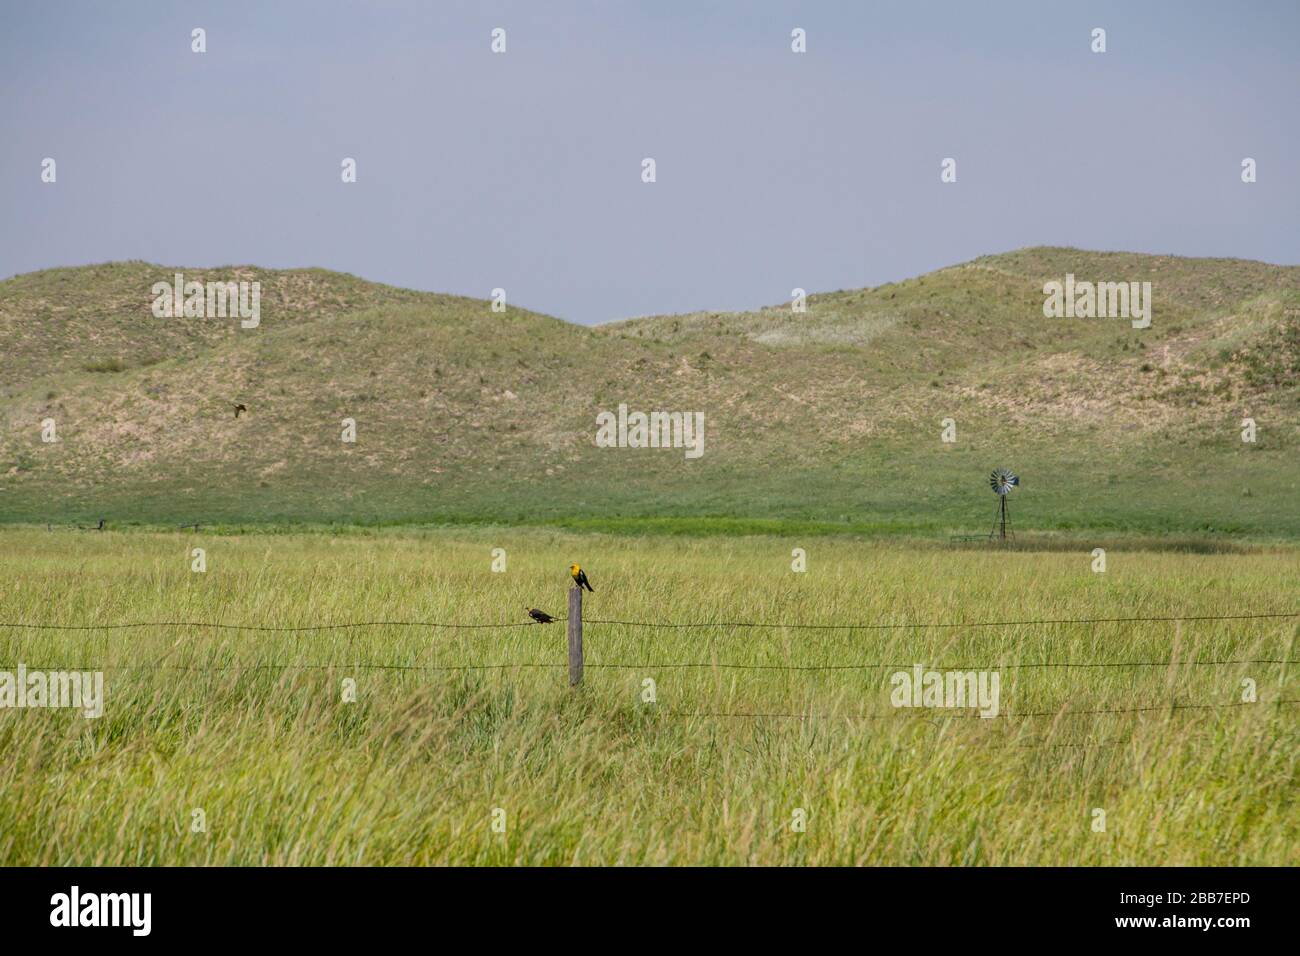 Die Ranch beherbergt eine Vielzahl von Vögeln, das sind Gelbkopfschwärze, in ihren Grasländern und Riparengebieten. Stockfoto